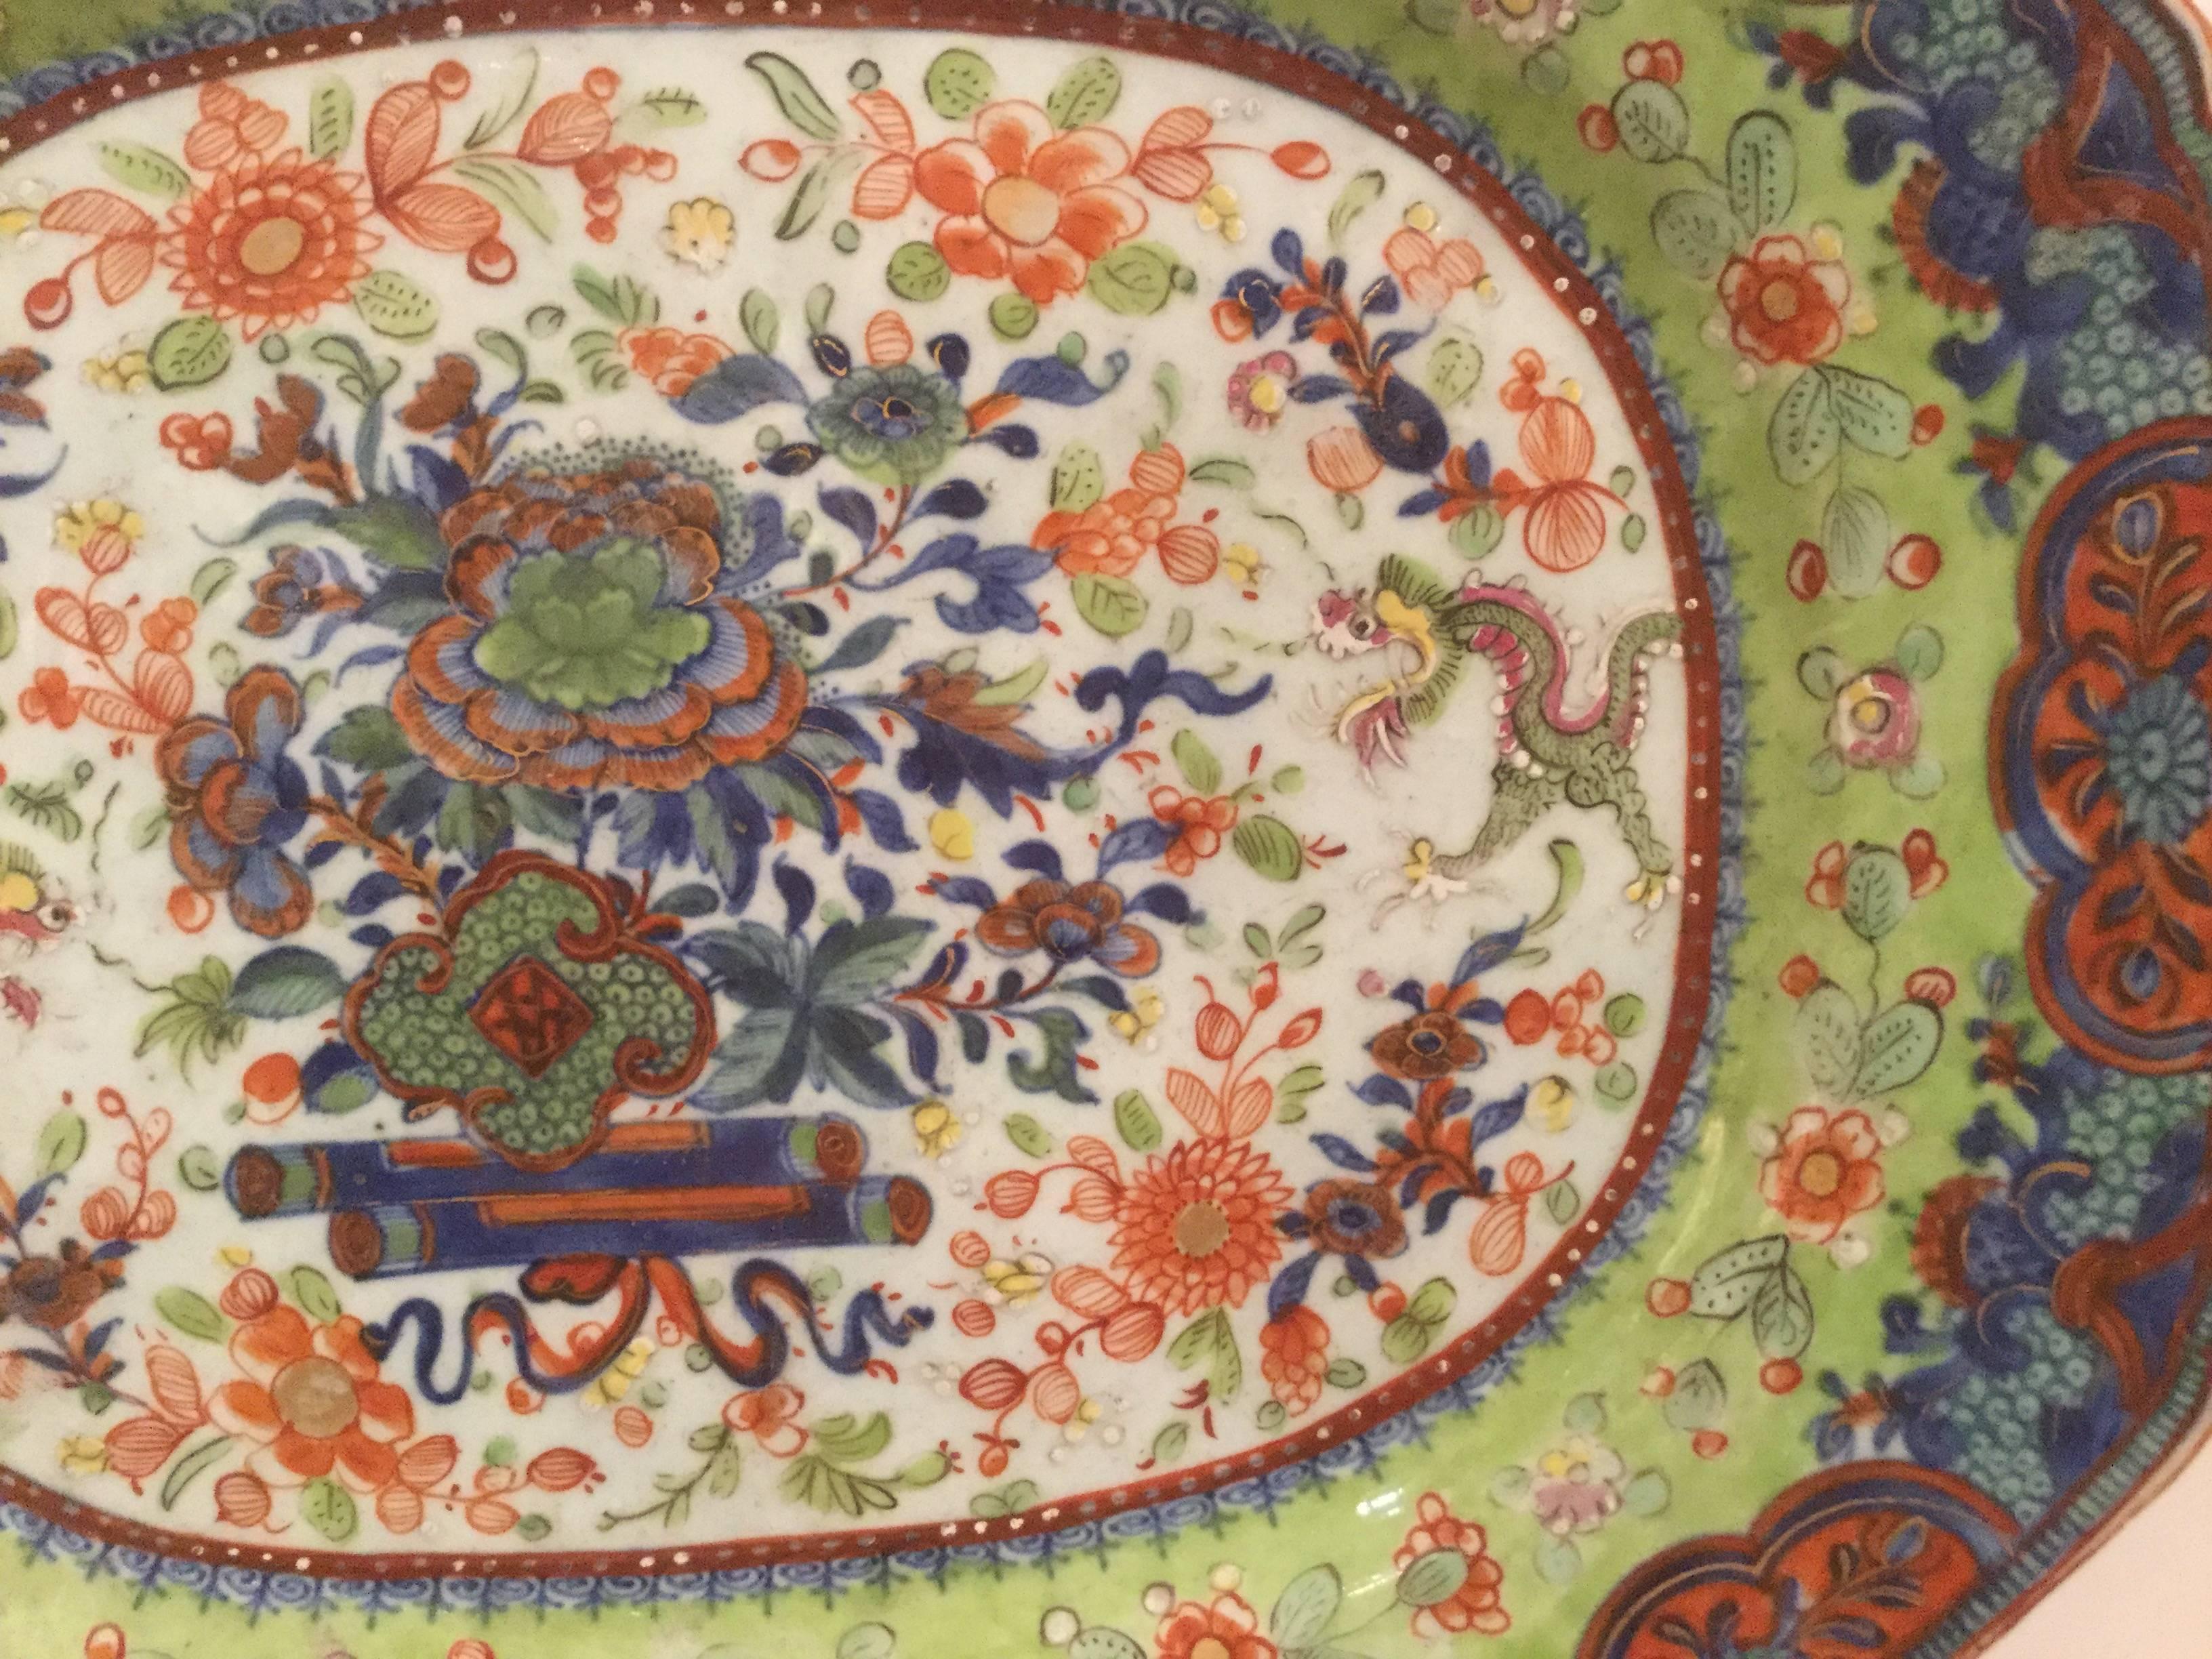 18th century Chinese clobbered platter.